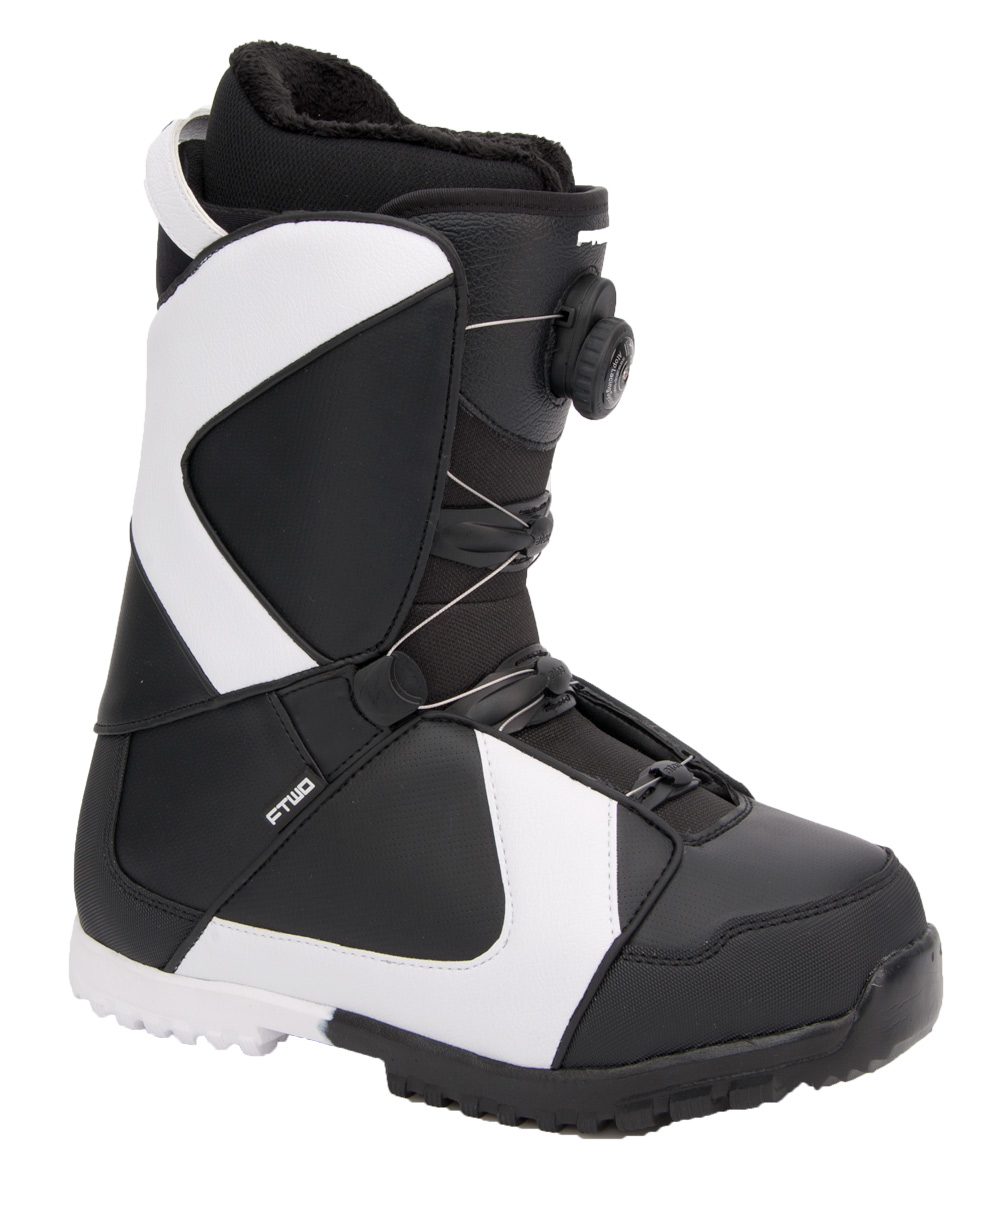 Ботинки сноубордические F2 Air размер 28,0 black/black  фото 